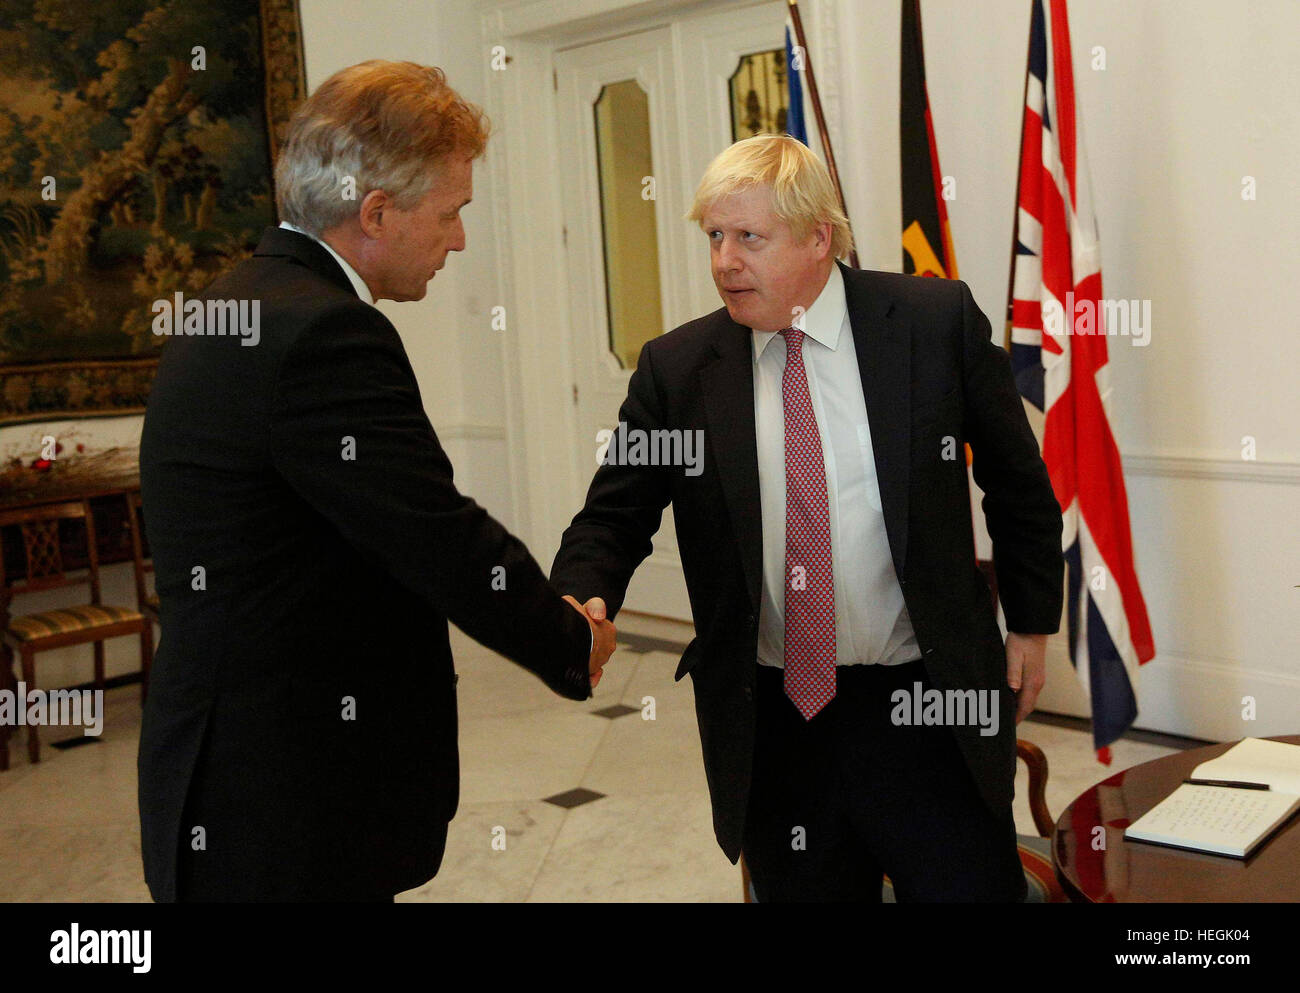 Der deutsche Botschafter Peter Ammon schüttelt Hände mit Außenminister Boris Johnson, nachdem er ein Buch der Anteilnahme für die Opfer des Angriffs LKW Berlin an der deutschen Botschaft in London unterzeichnet. Stockfoto